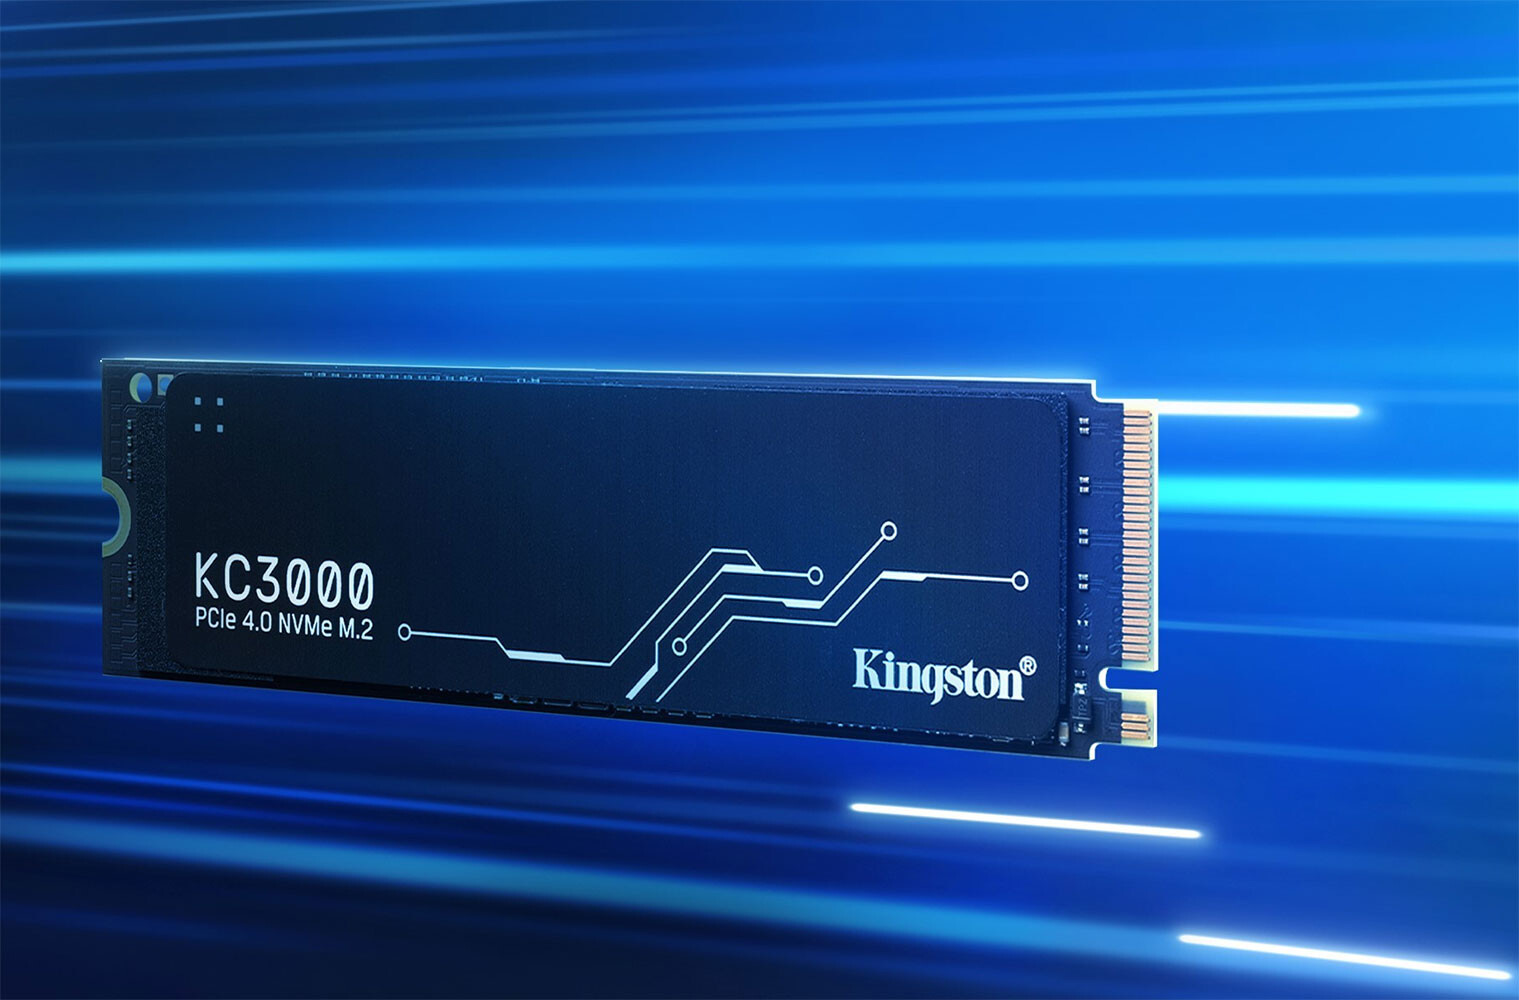 Kingston Digital anunció hoy KC3000, su SSD PCIe 4.0 NVMe M.2 de próxima generación para PC de escritorio y portátiles. KC3000 SSD ofrece